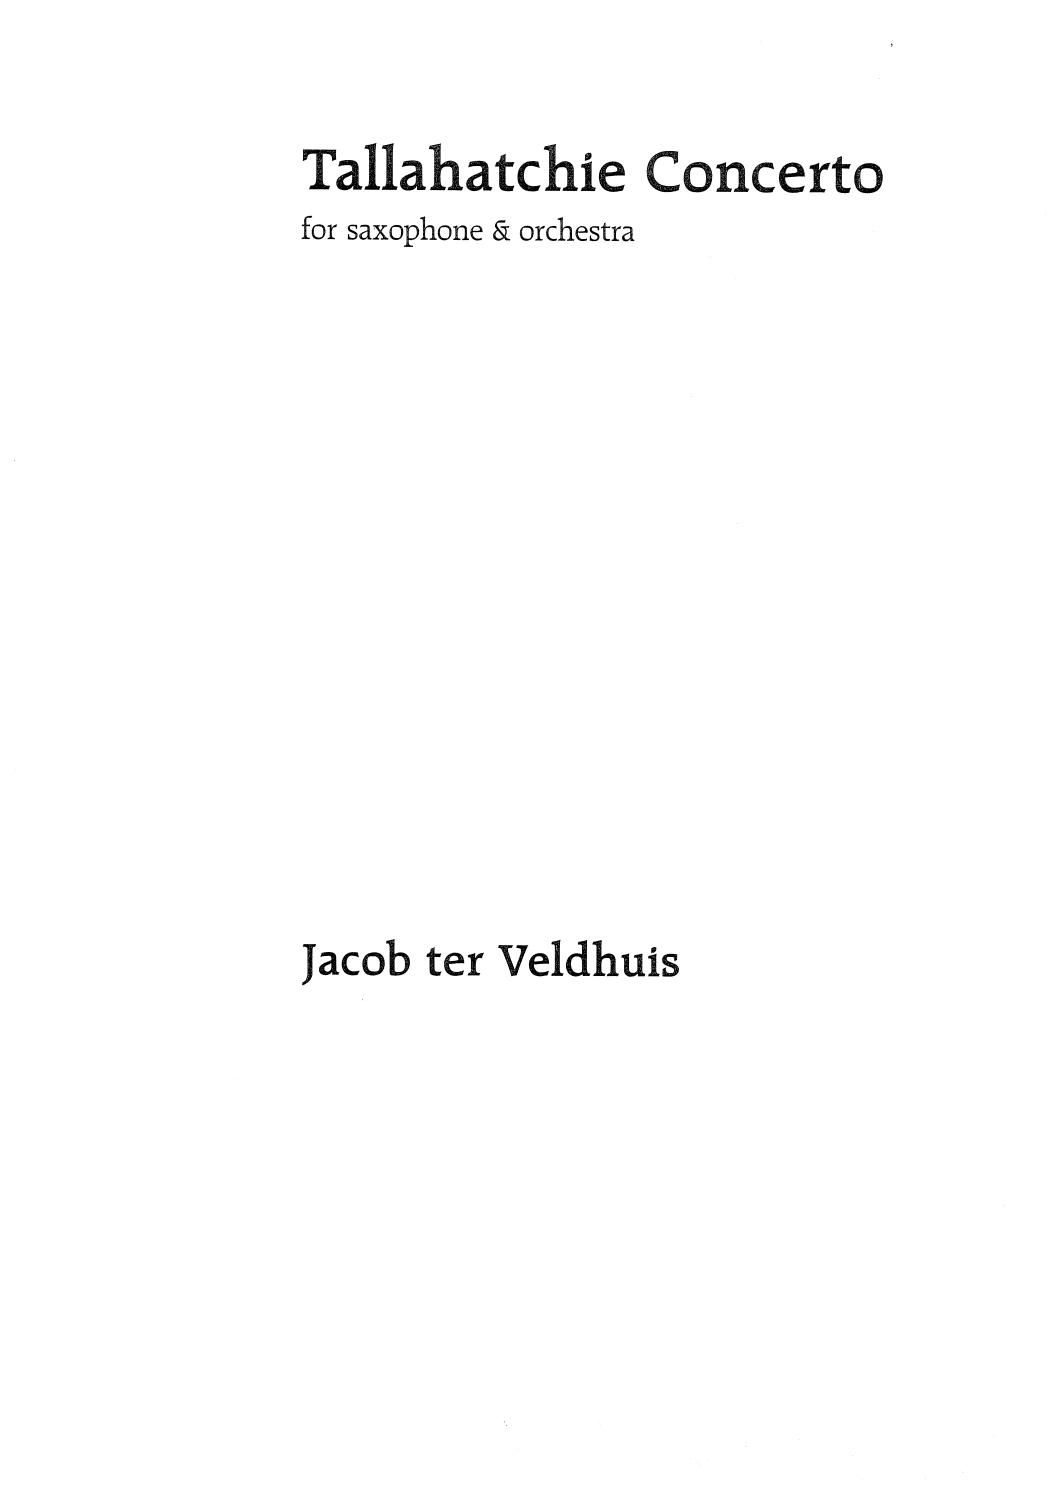 Tallahatchie Concerto (2001-2009) para saxofón alto y piano. Jacob ter Veldhuis